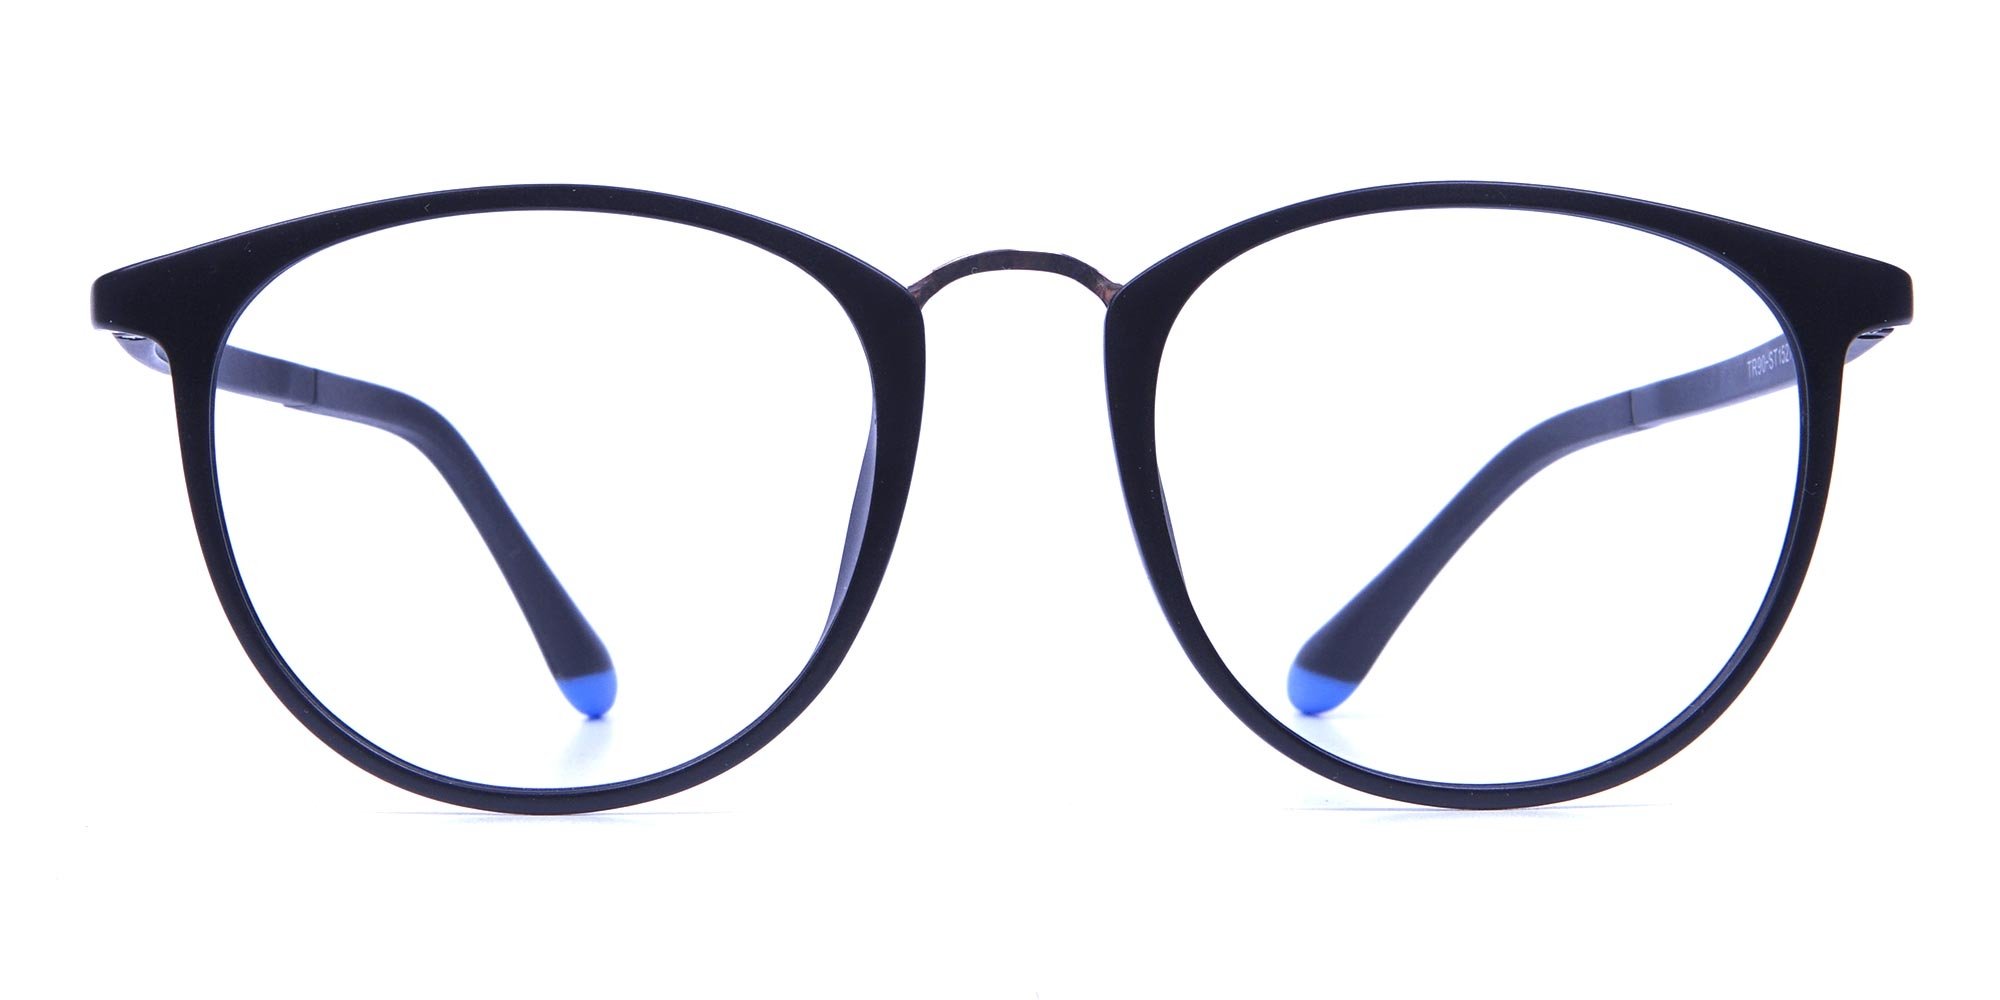 funky mens eyeglasses trends 2019